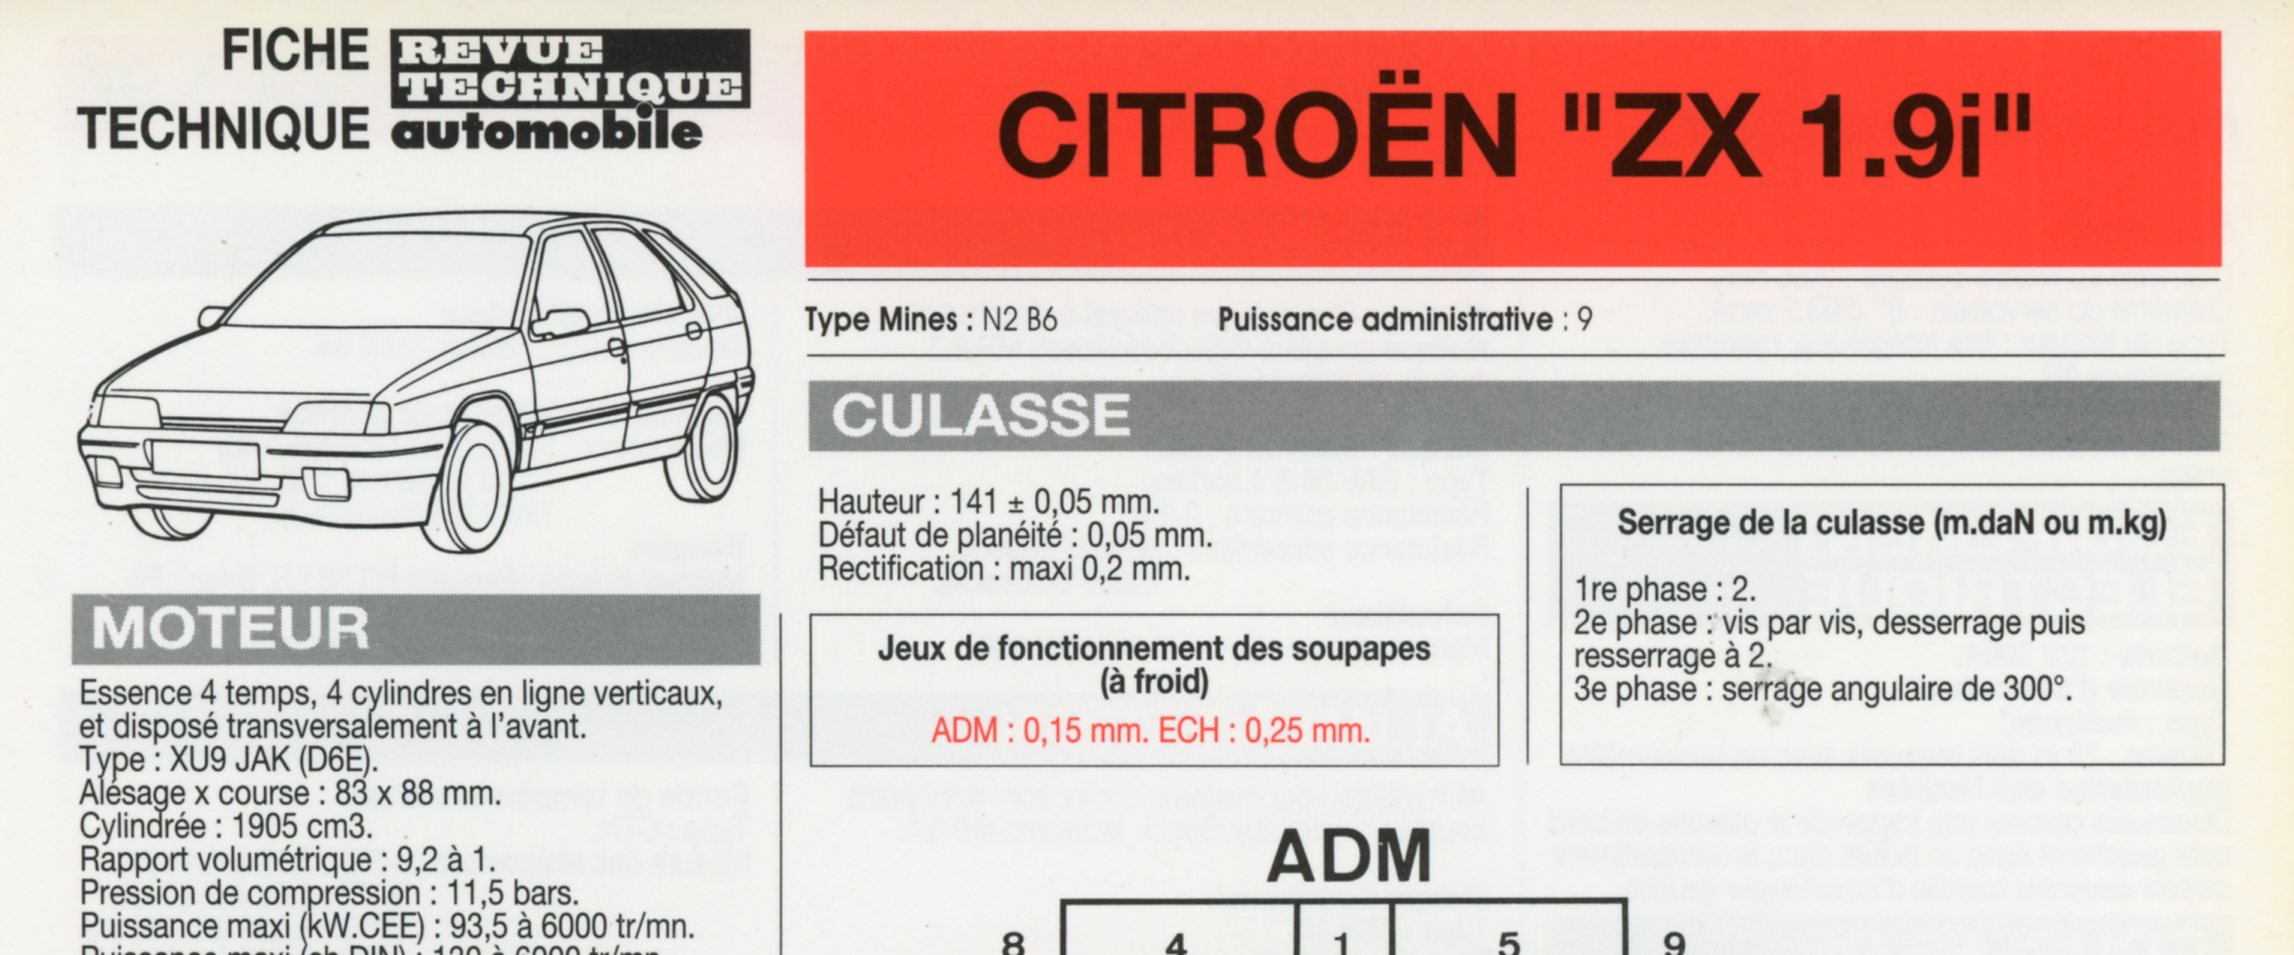 FICHE TECHNIQUE CITROËN ZX 1.9i - FICHE RTA AUTOMOBILE 1993